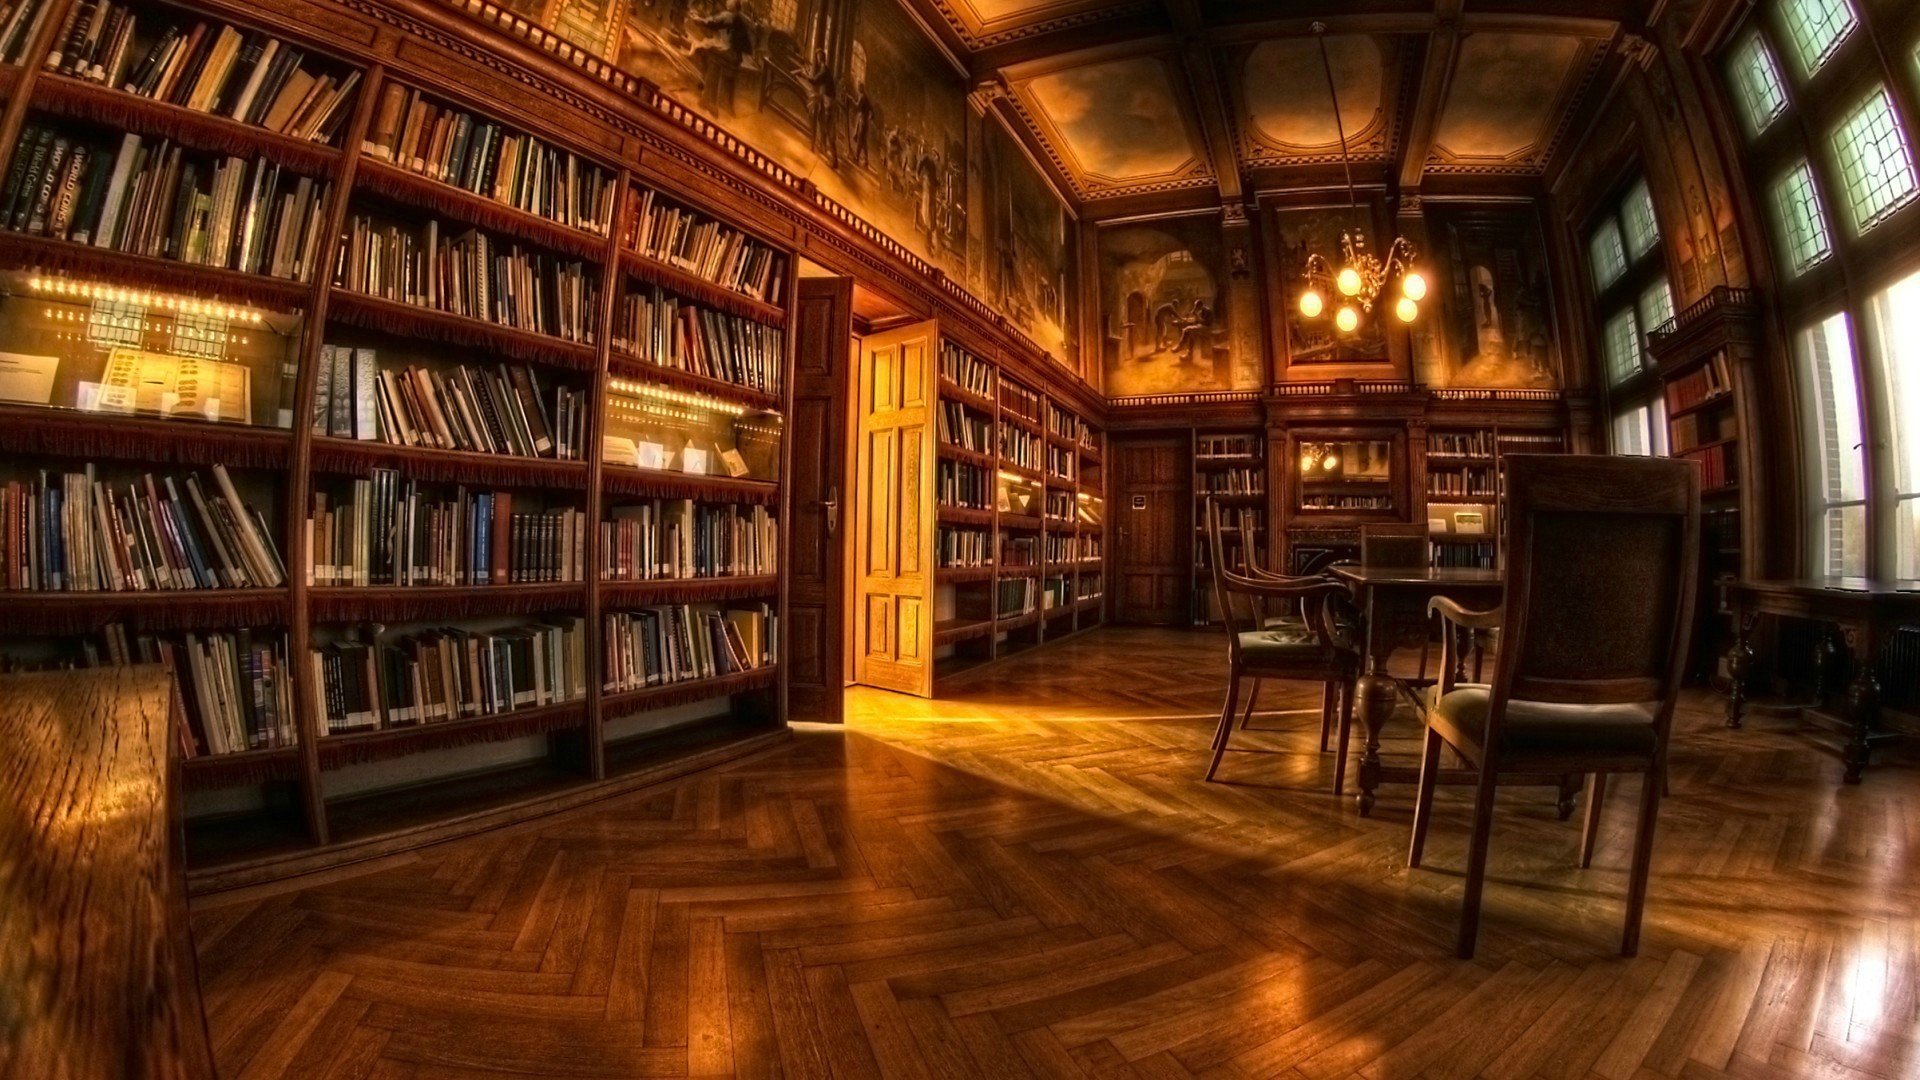 library, Books, Shelves, Fisheye lens, Chair, Lights Wallpaper